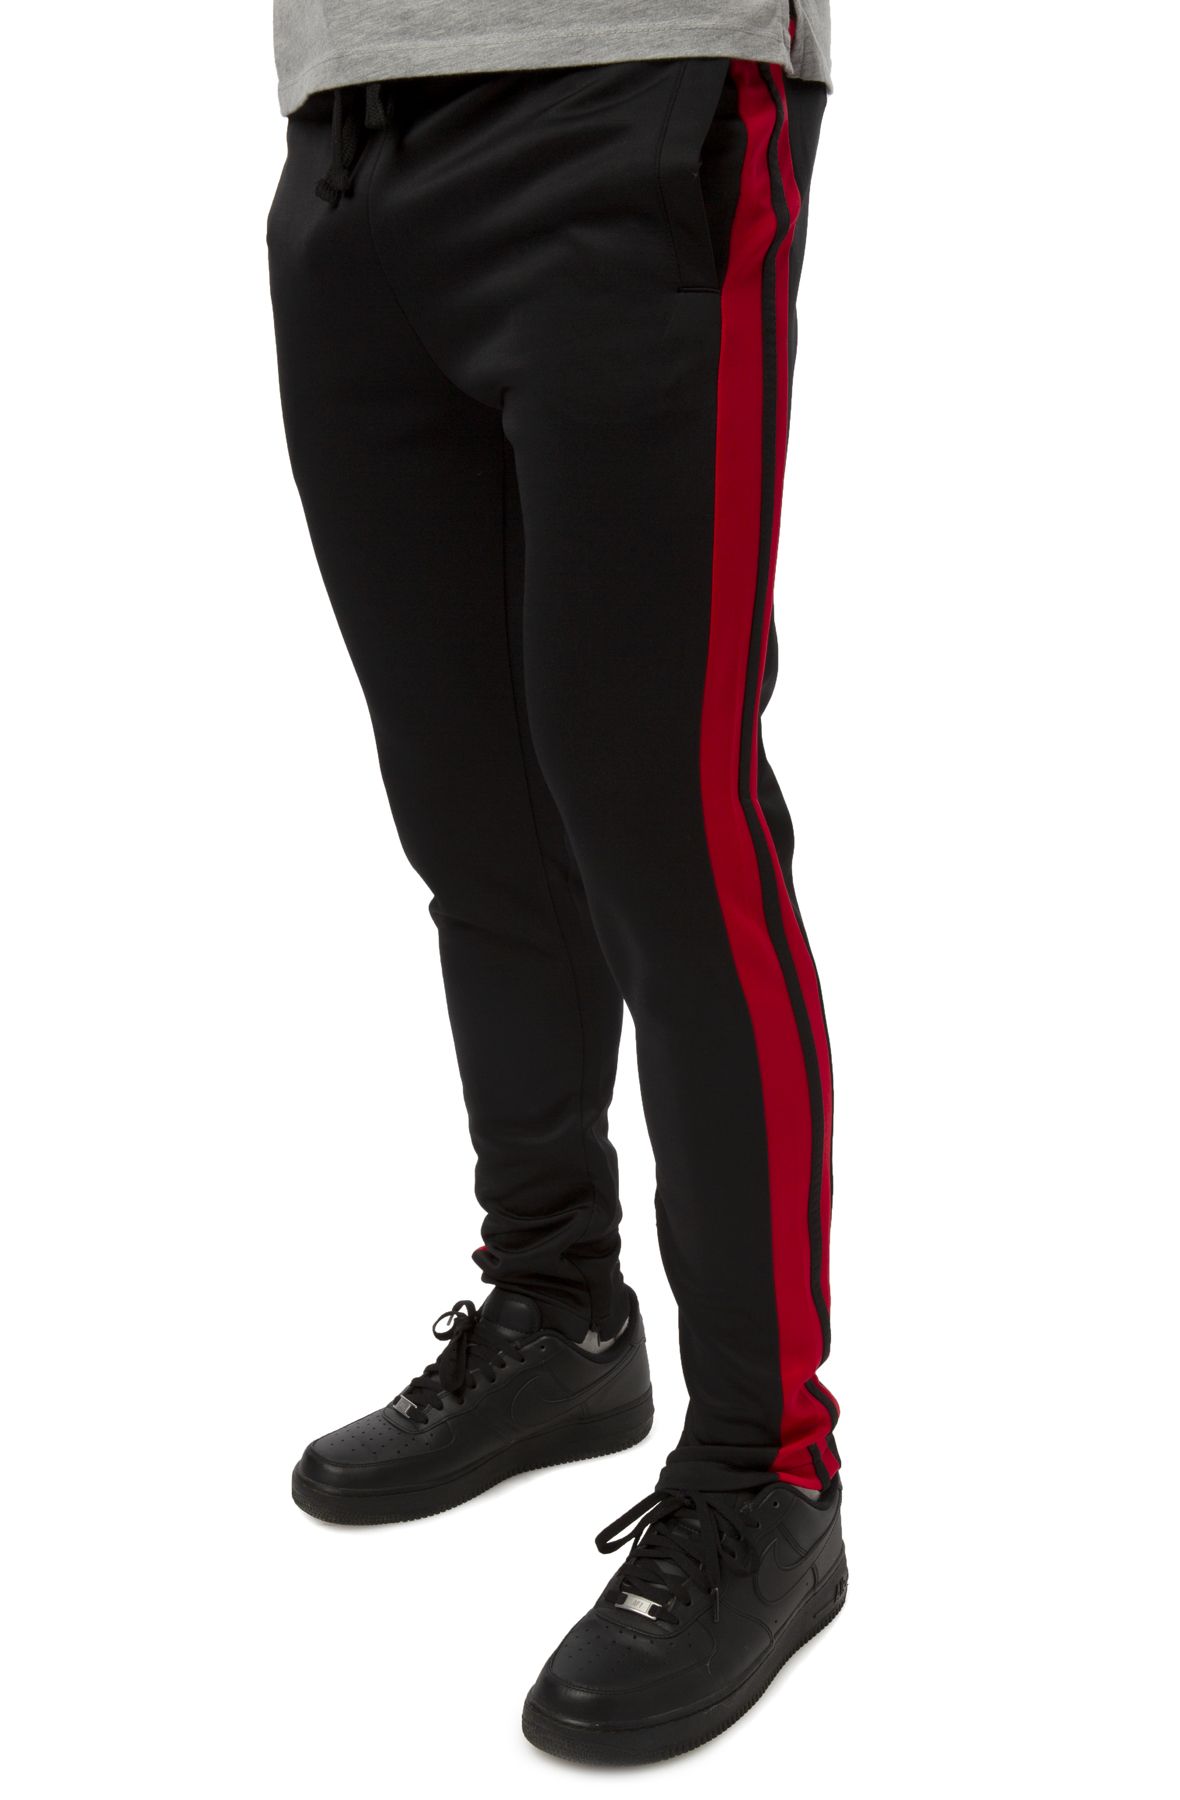 Ballinger Track Pants - Red/Black